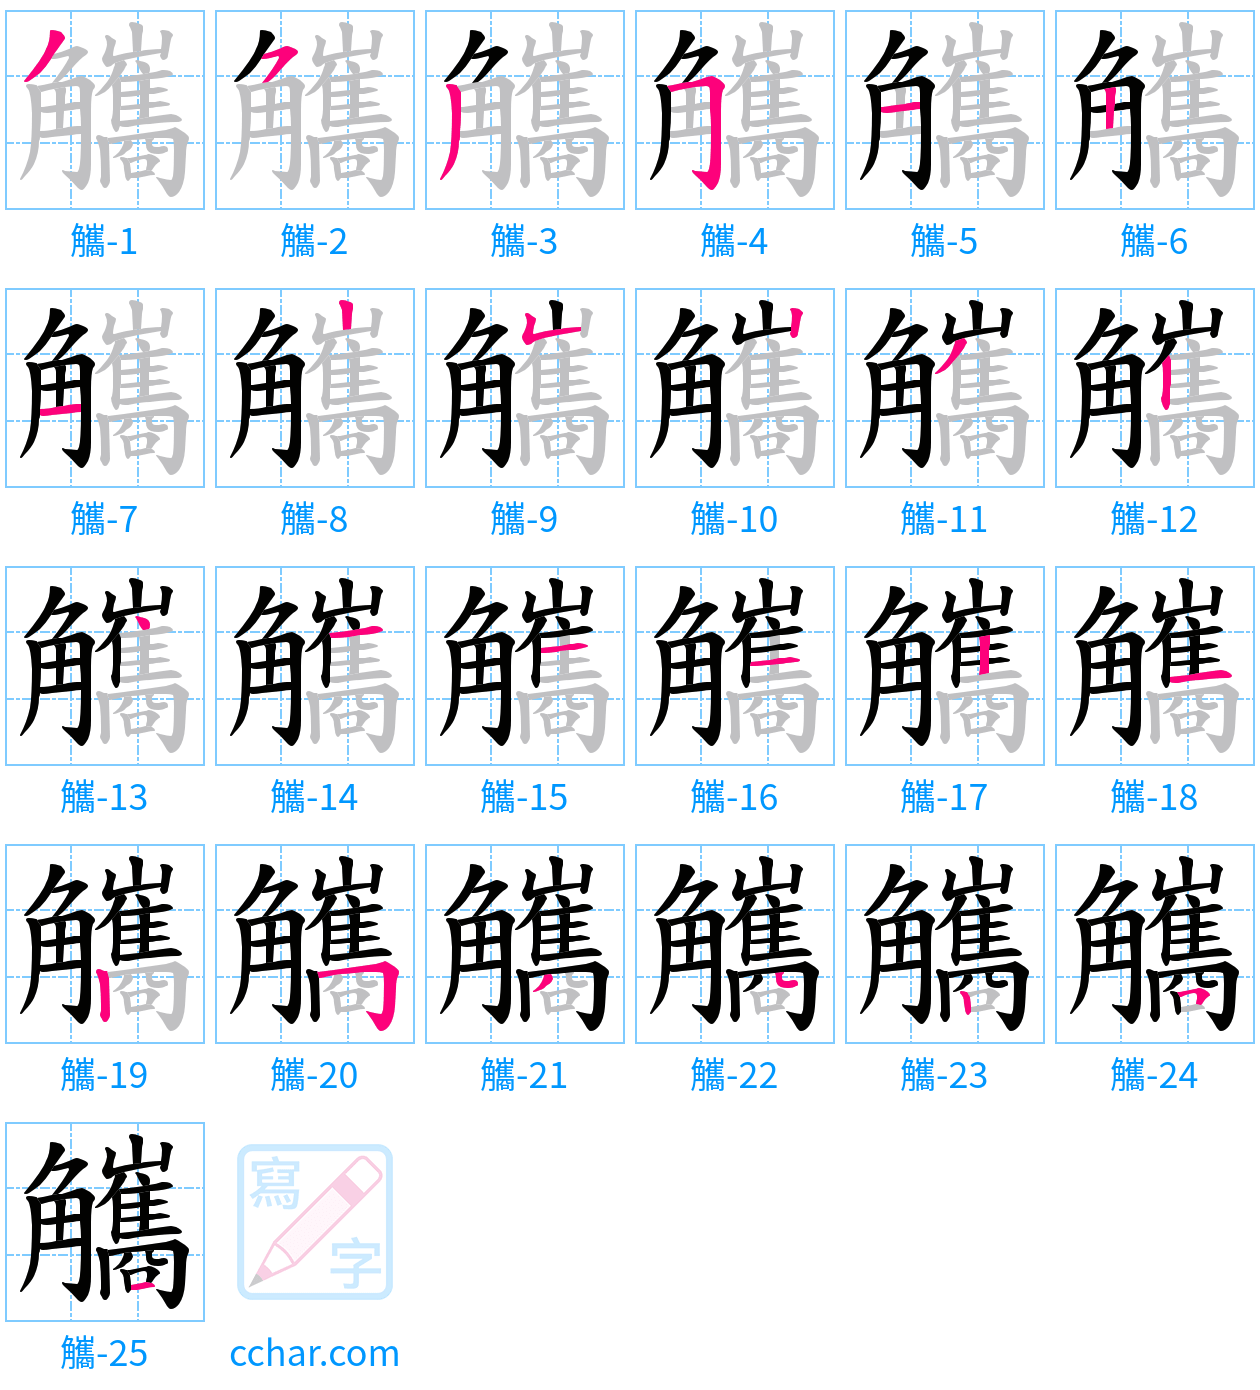 觿 stroke order step-by-step diagram